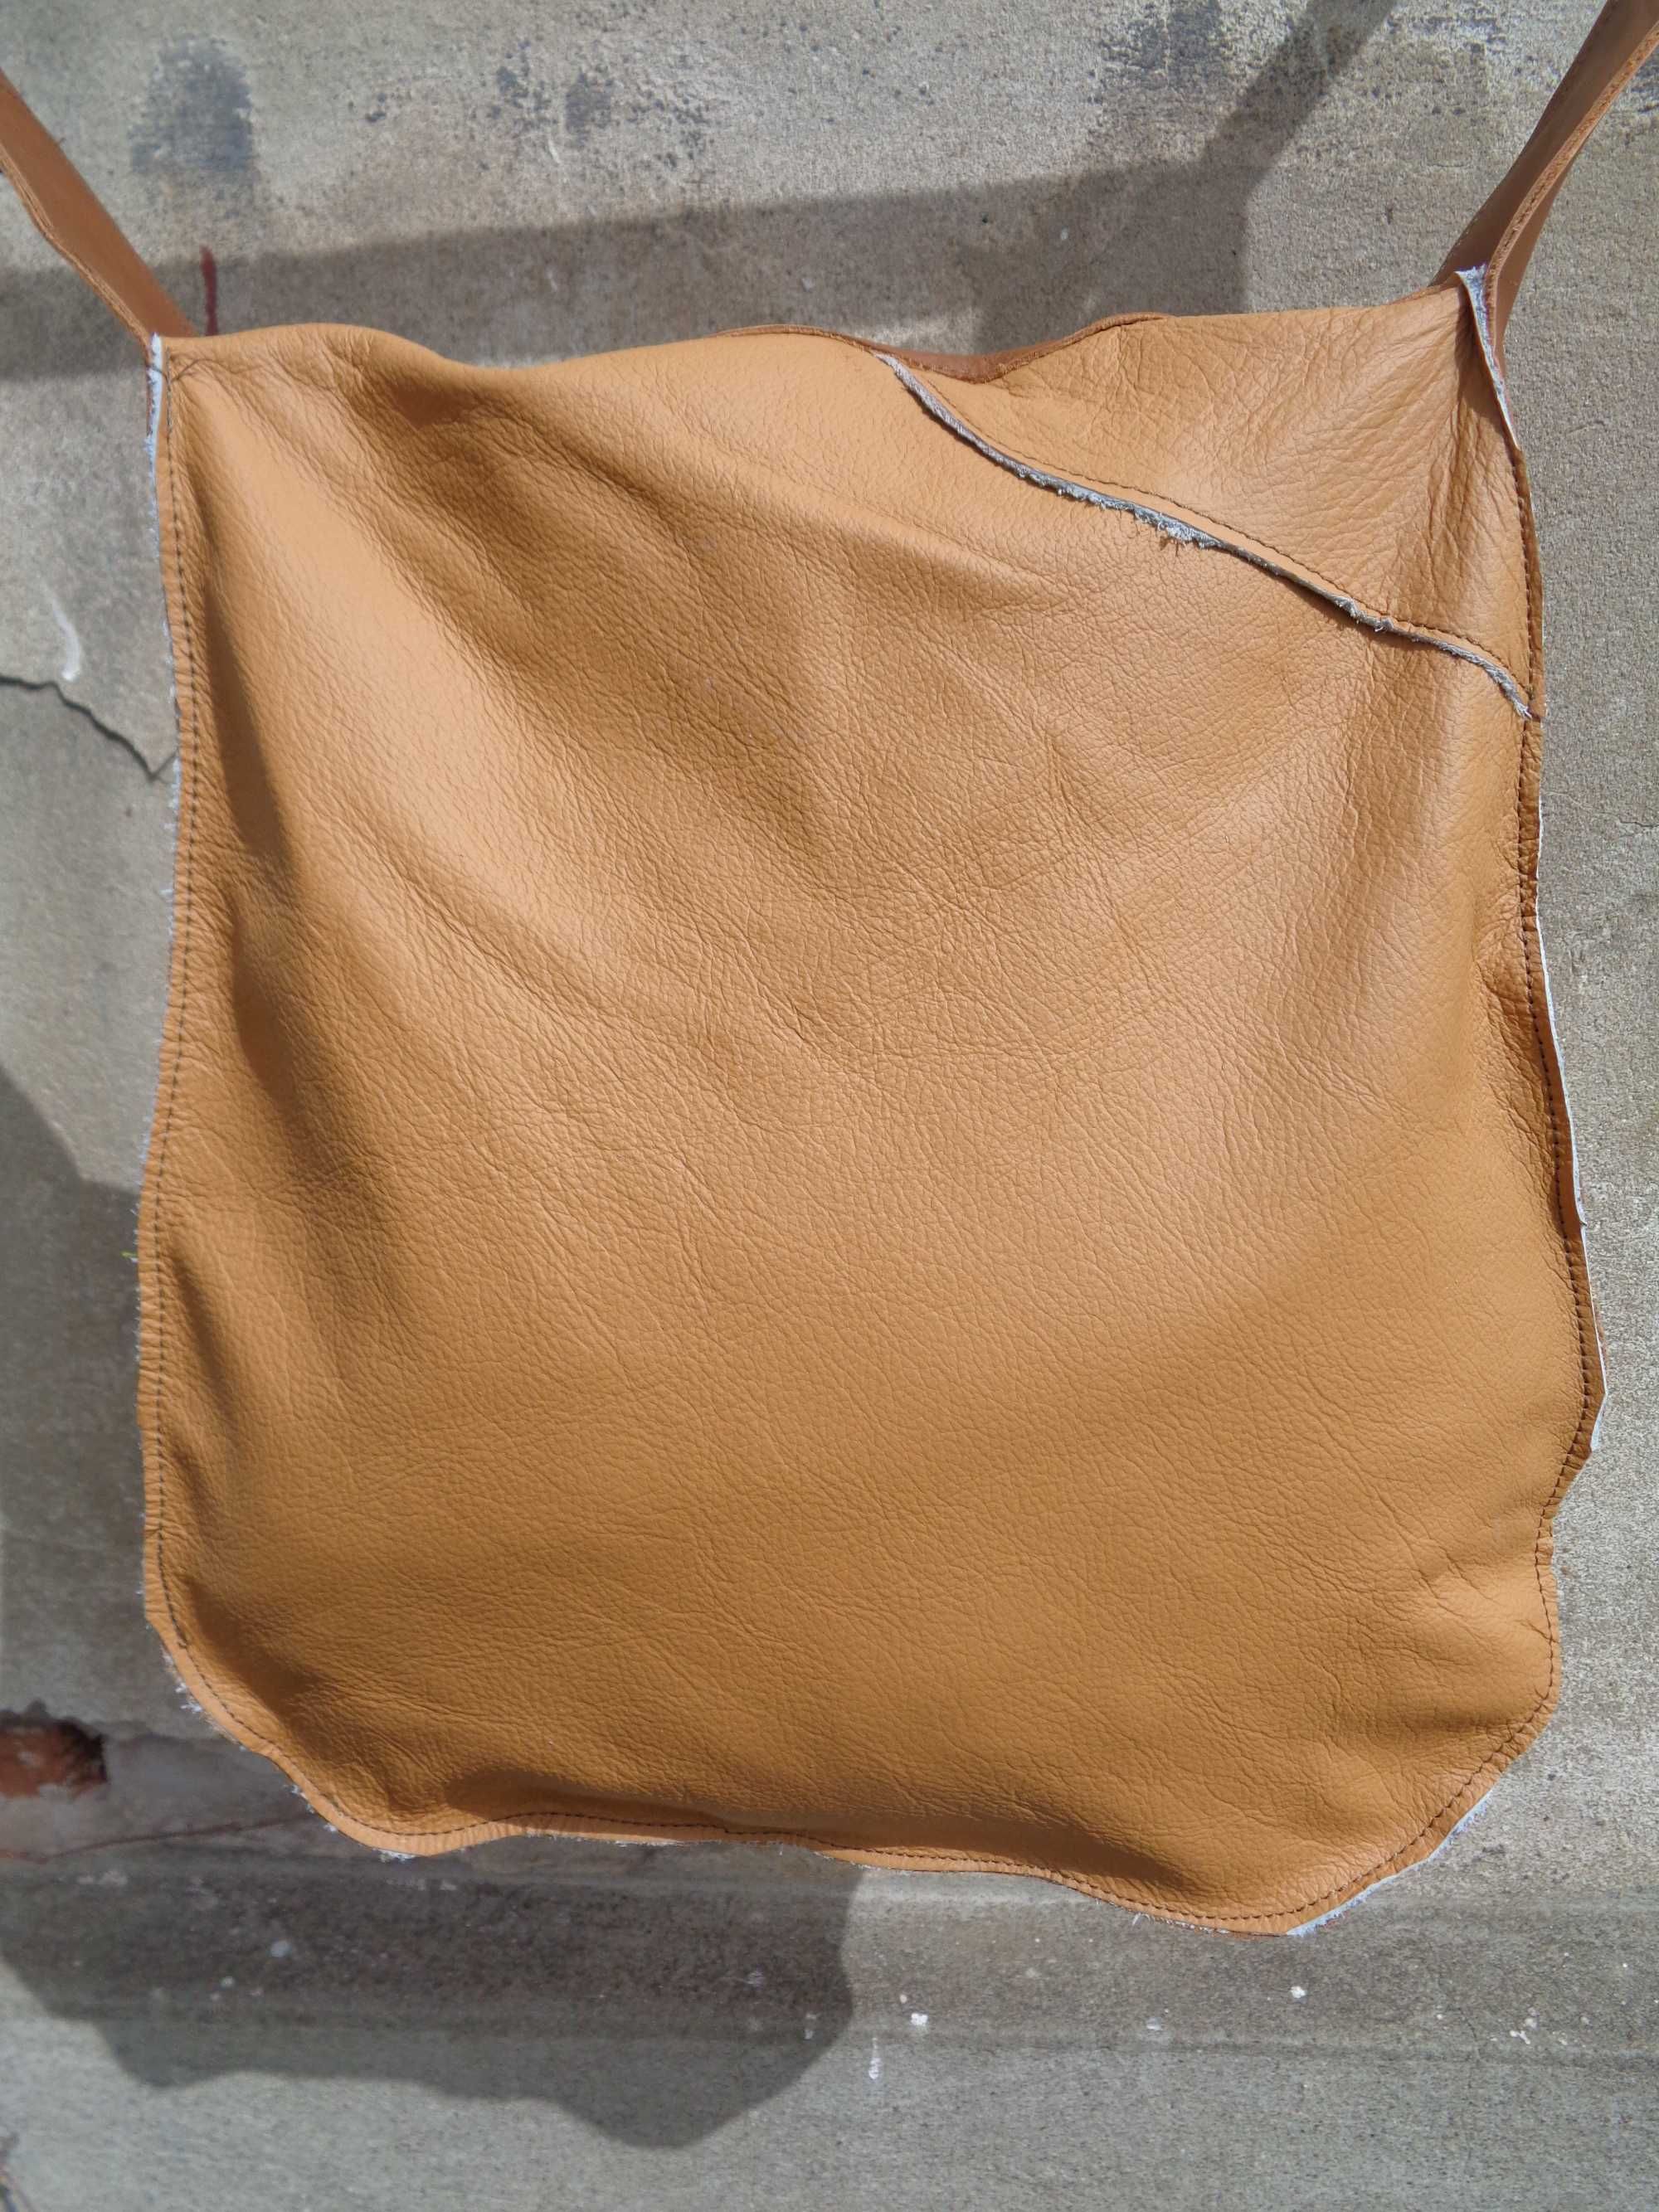 Artystyczna duża skórzana kolorowa torba. Handmade